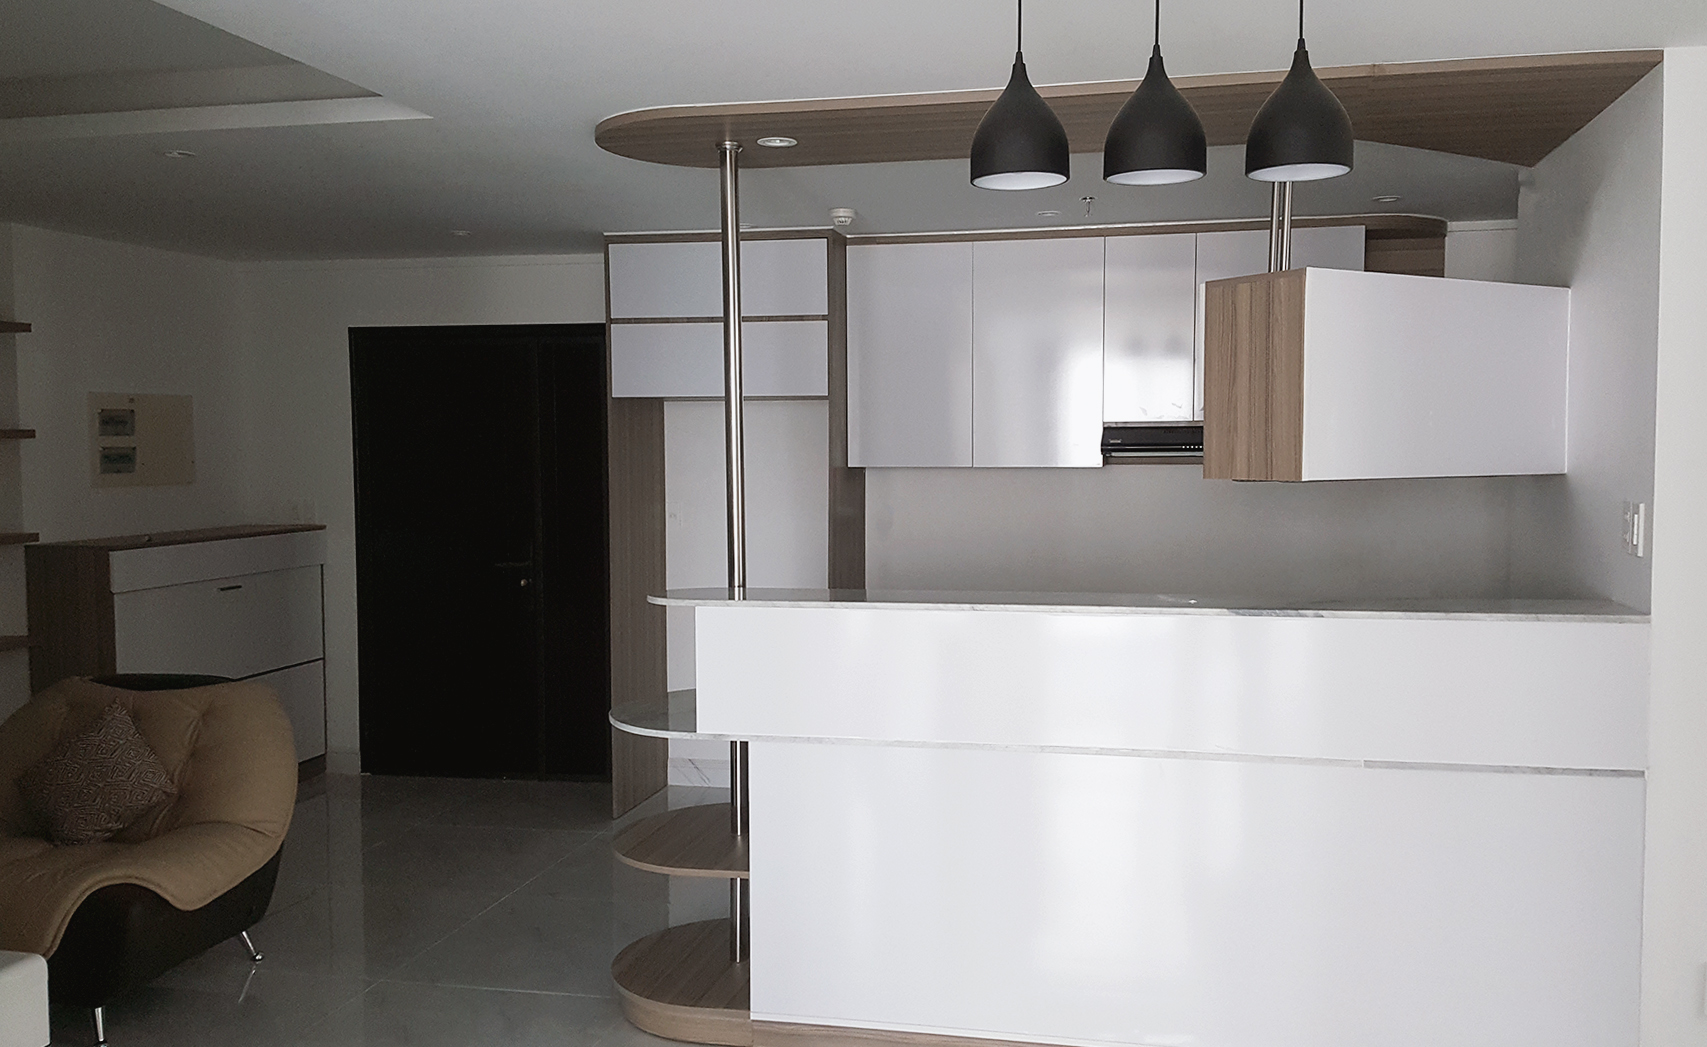 Phòng bếp, phong cách Hiện đại Modern, hoàn thiện nội thất, căn hộ Phú Mỹ Hưng